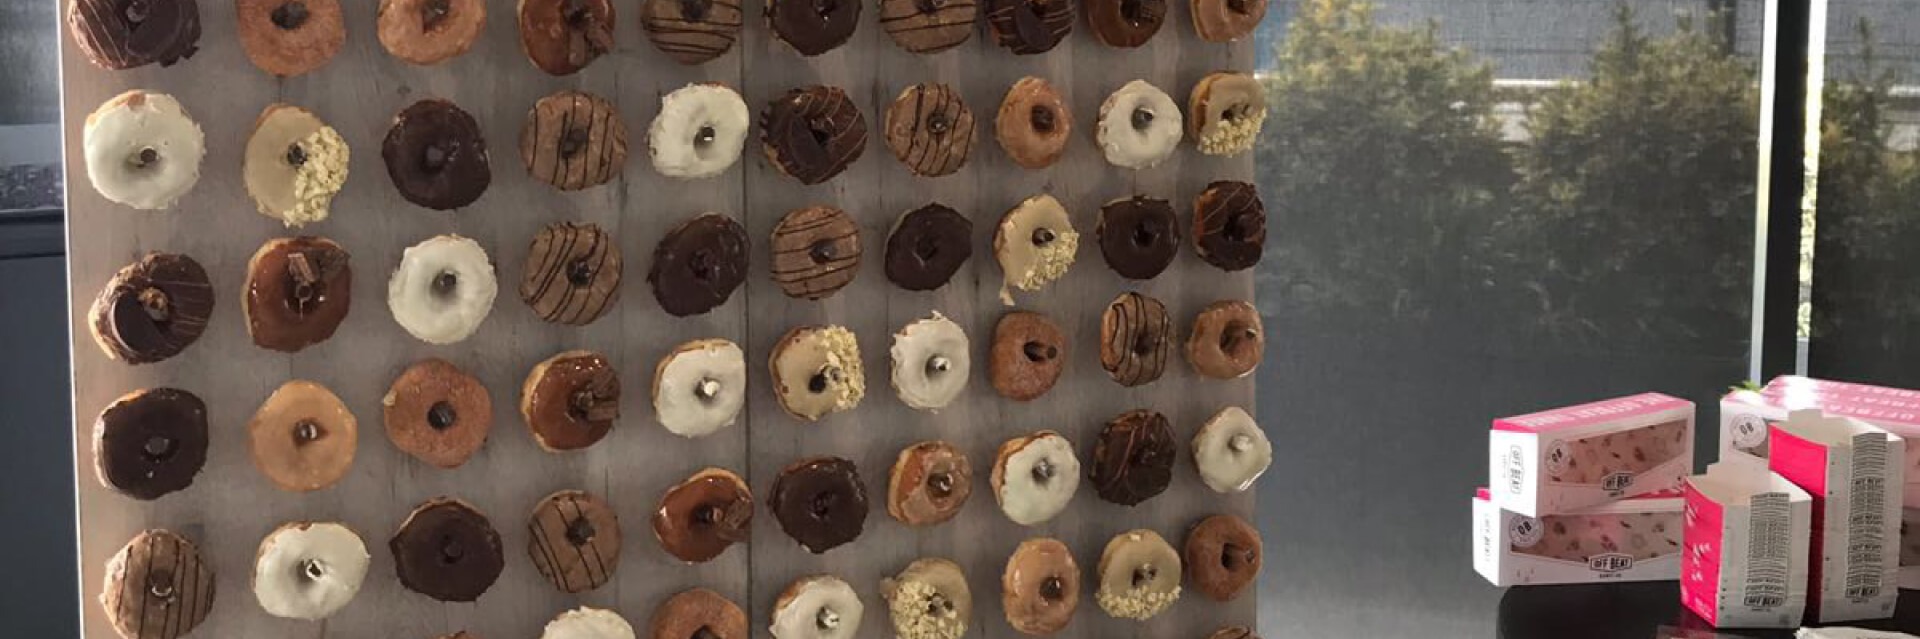 Donut wall